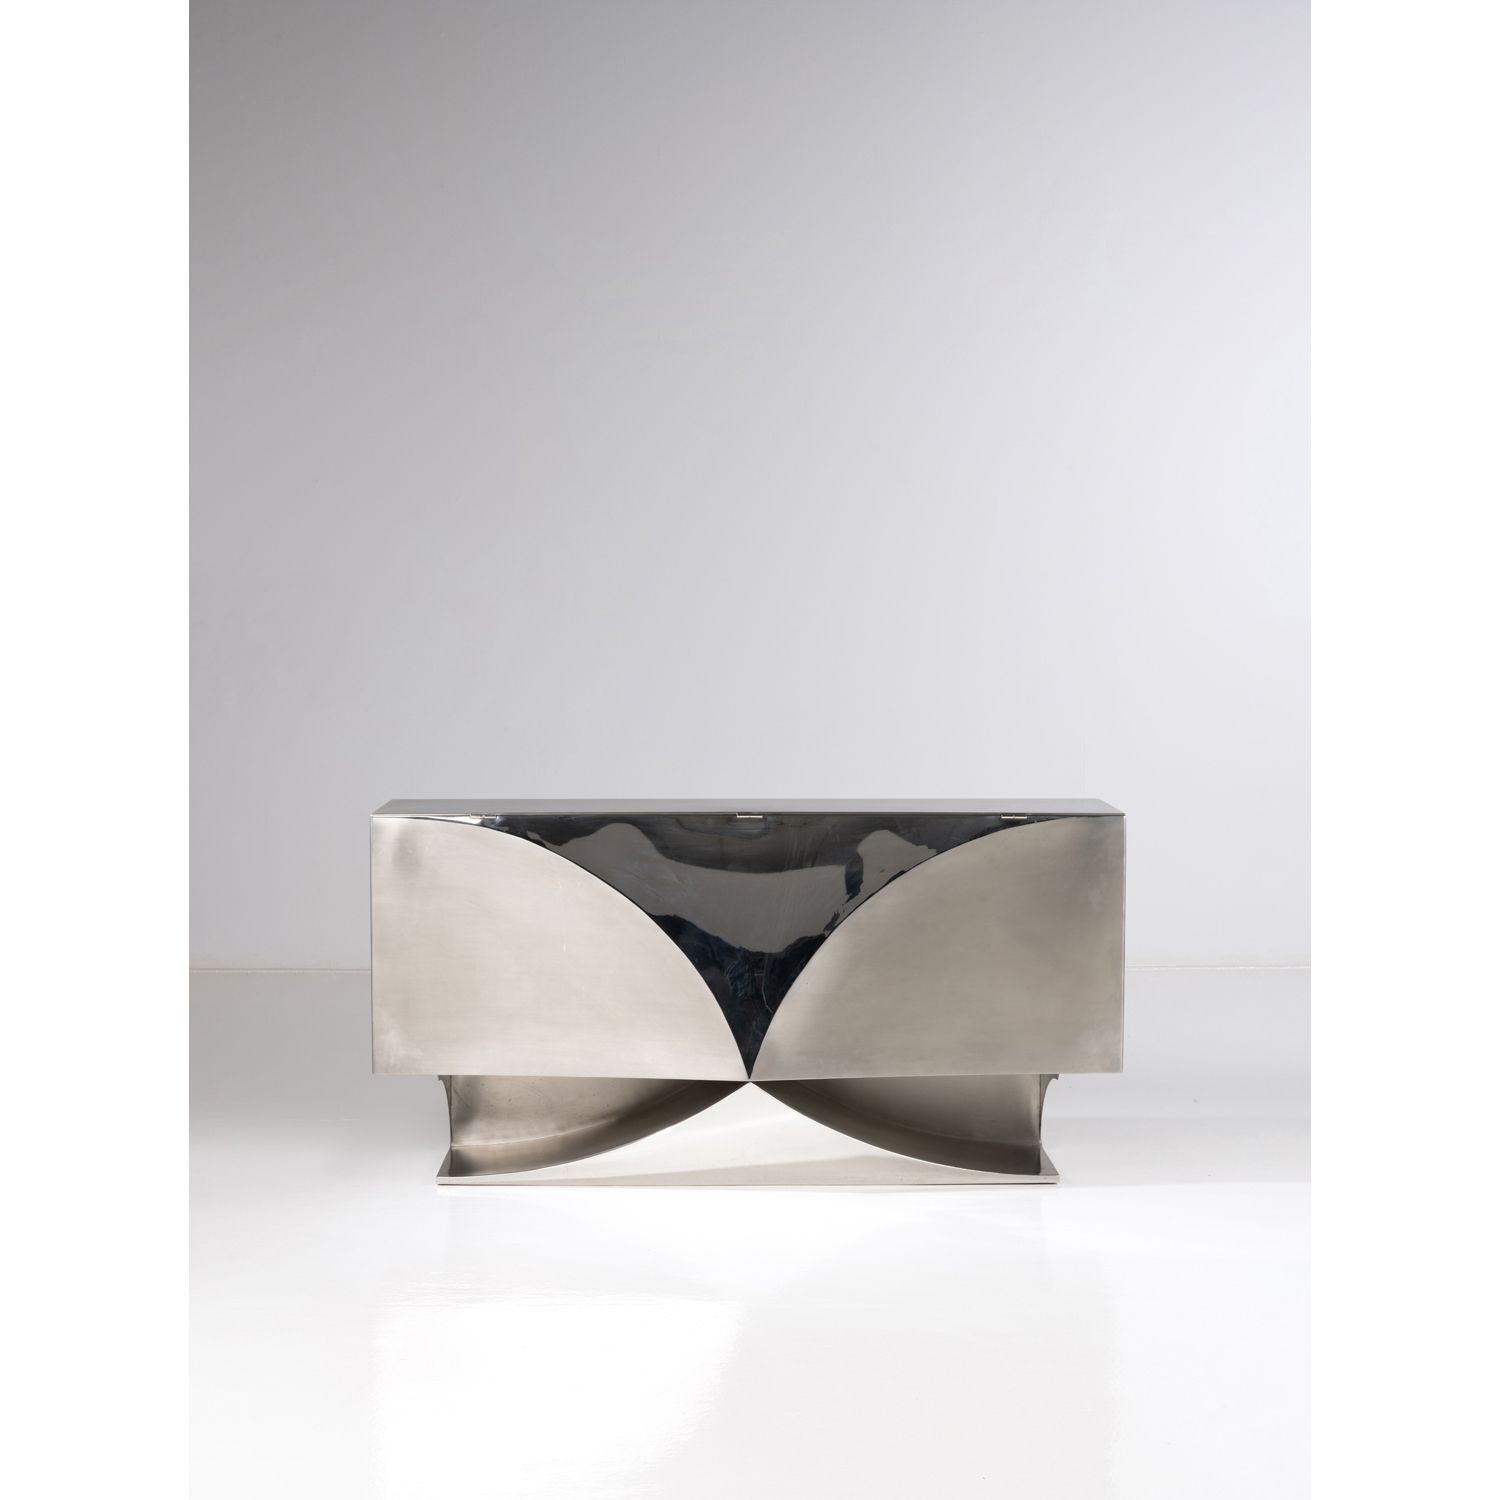 Null 莫里斯-马蒂（20-21岁）

边柜--独特的作品

不锈钢

模型创建于2008年

高90×宽180×深40厘米

出处 :

- Martel-&hellip;